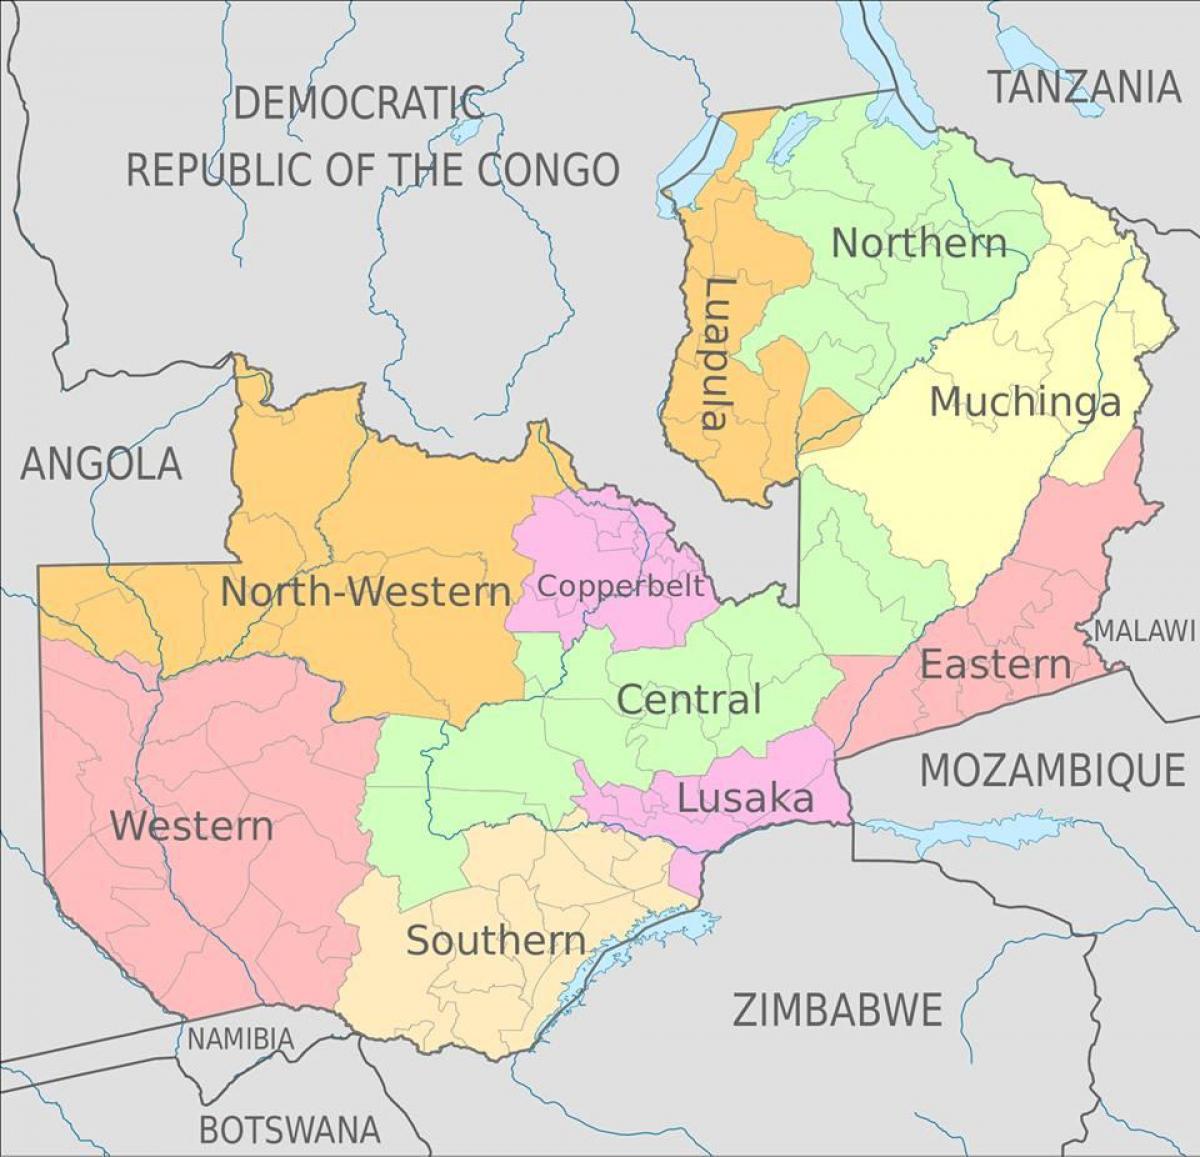 χάρτης της Ζάμπια δείχνει 10 επαρχίες